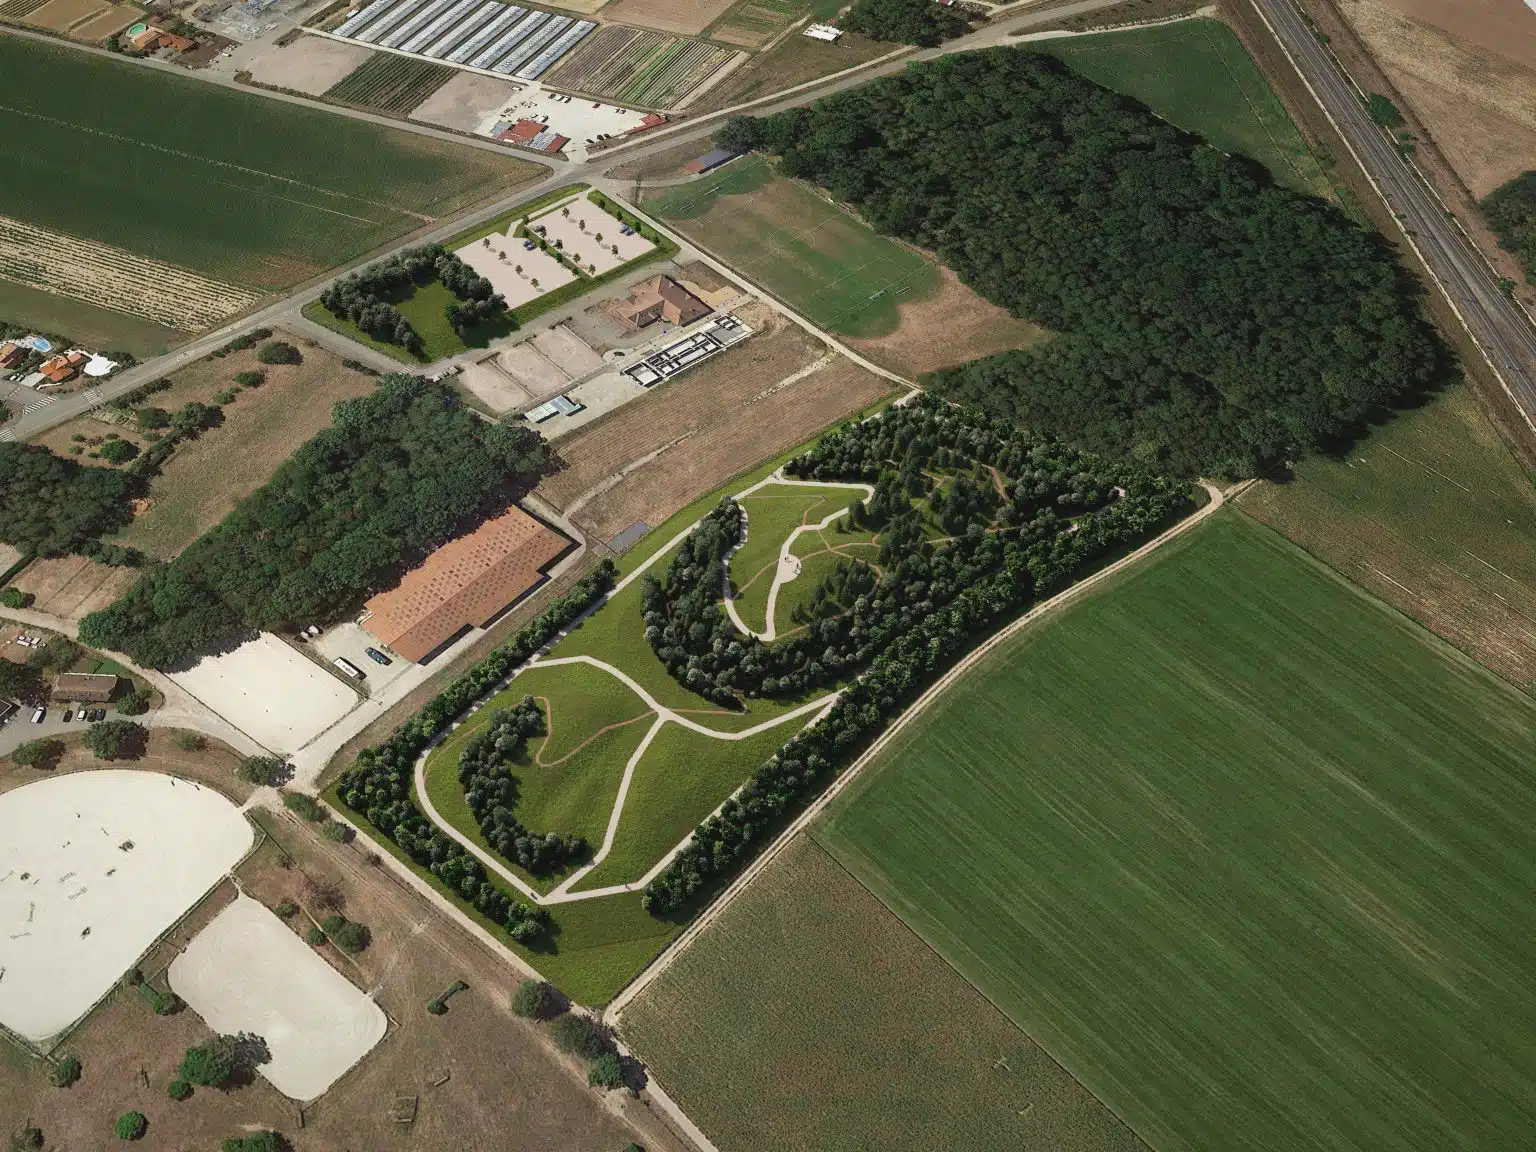 Vue de l'insertion paysagère aérienne du projet d'Eckwersheim avec les nouveaux espaces sportifs